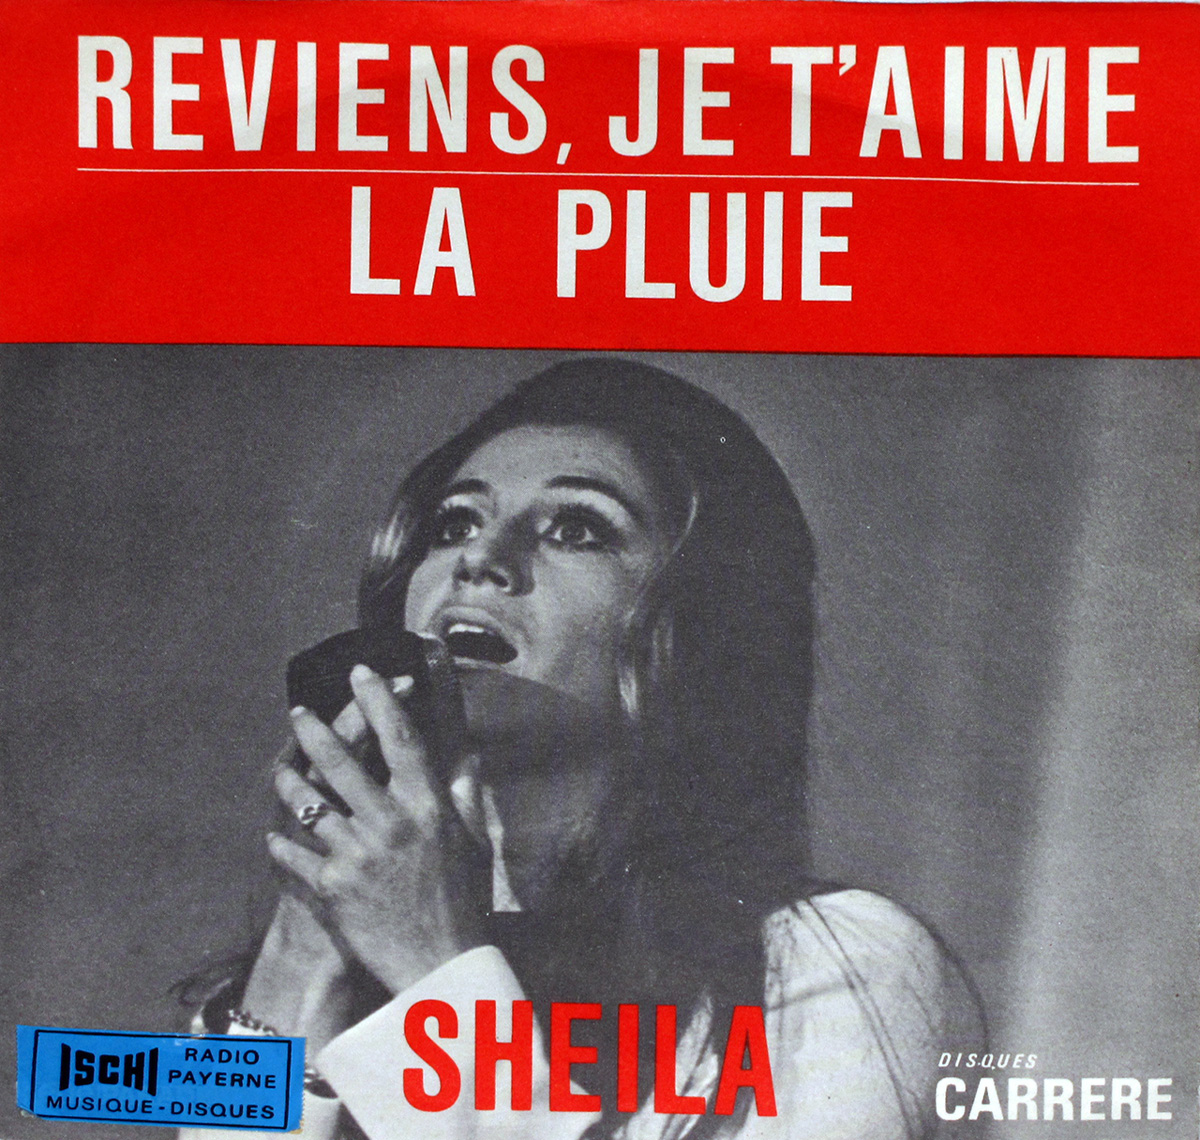 SHEILA REVIENS JE T'AIME LA PLUIE 7" PS Single